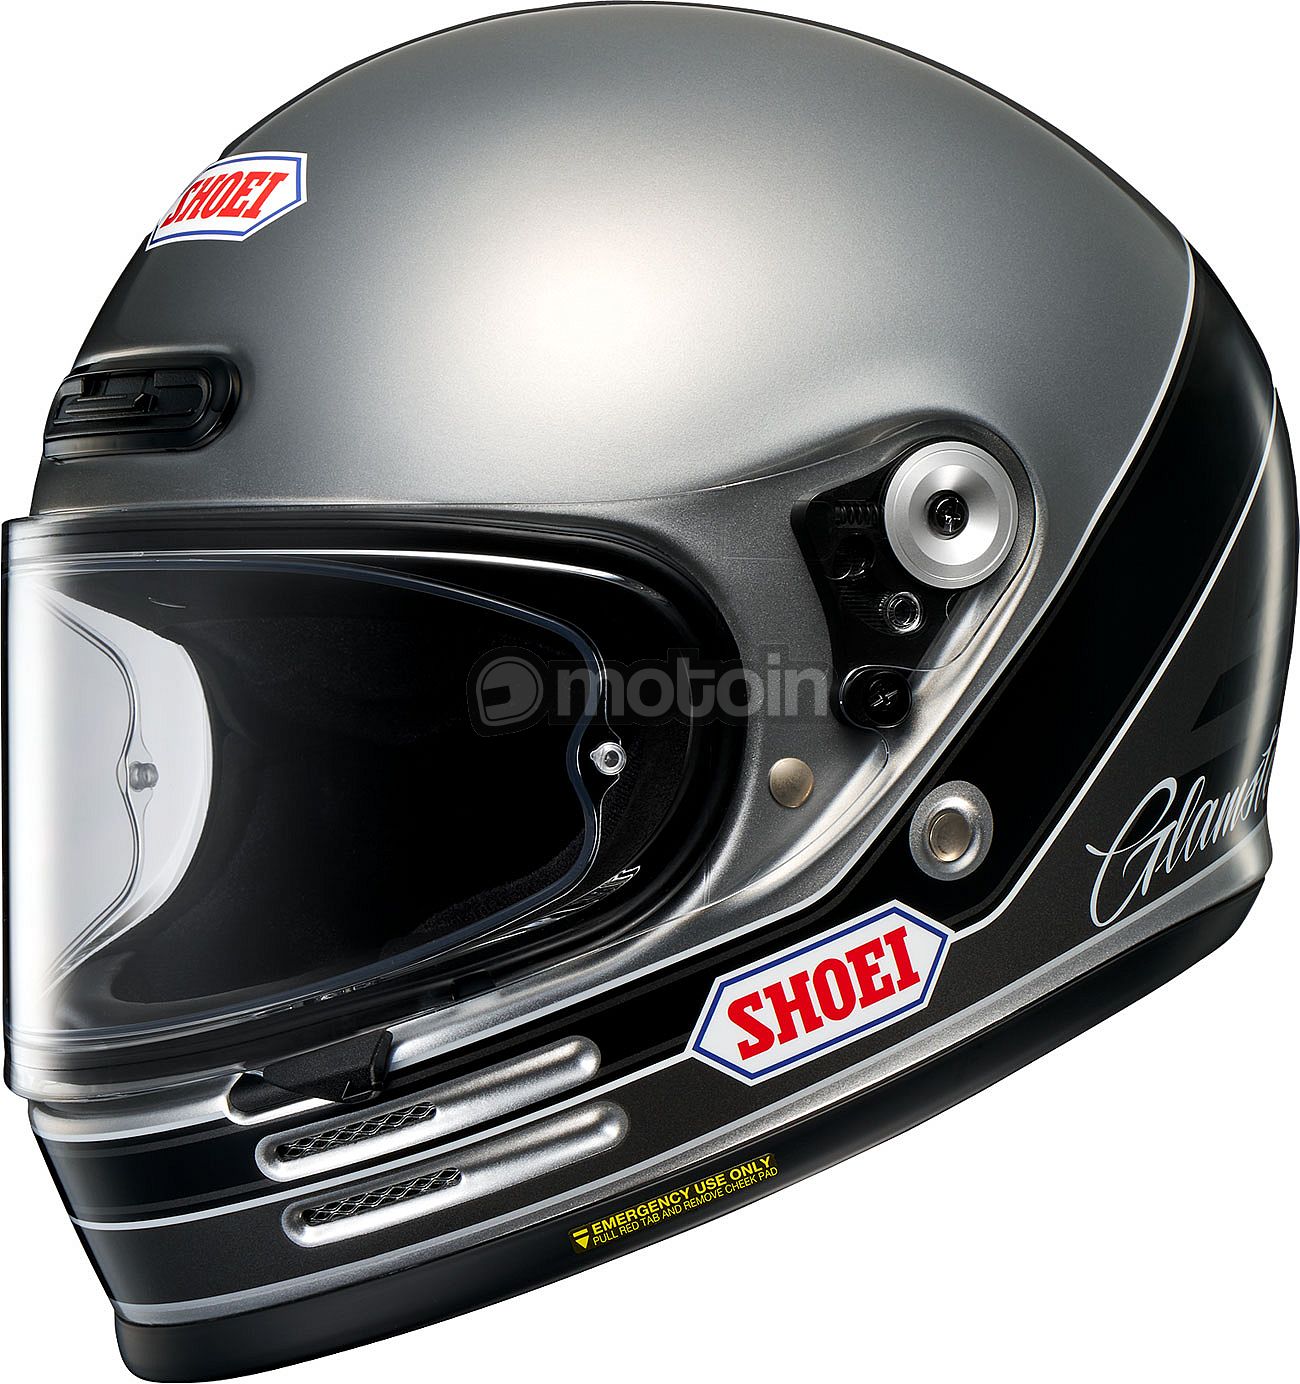 Shoei Glamster-06 Abiding, casco integral